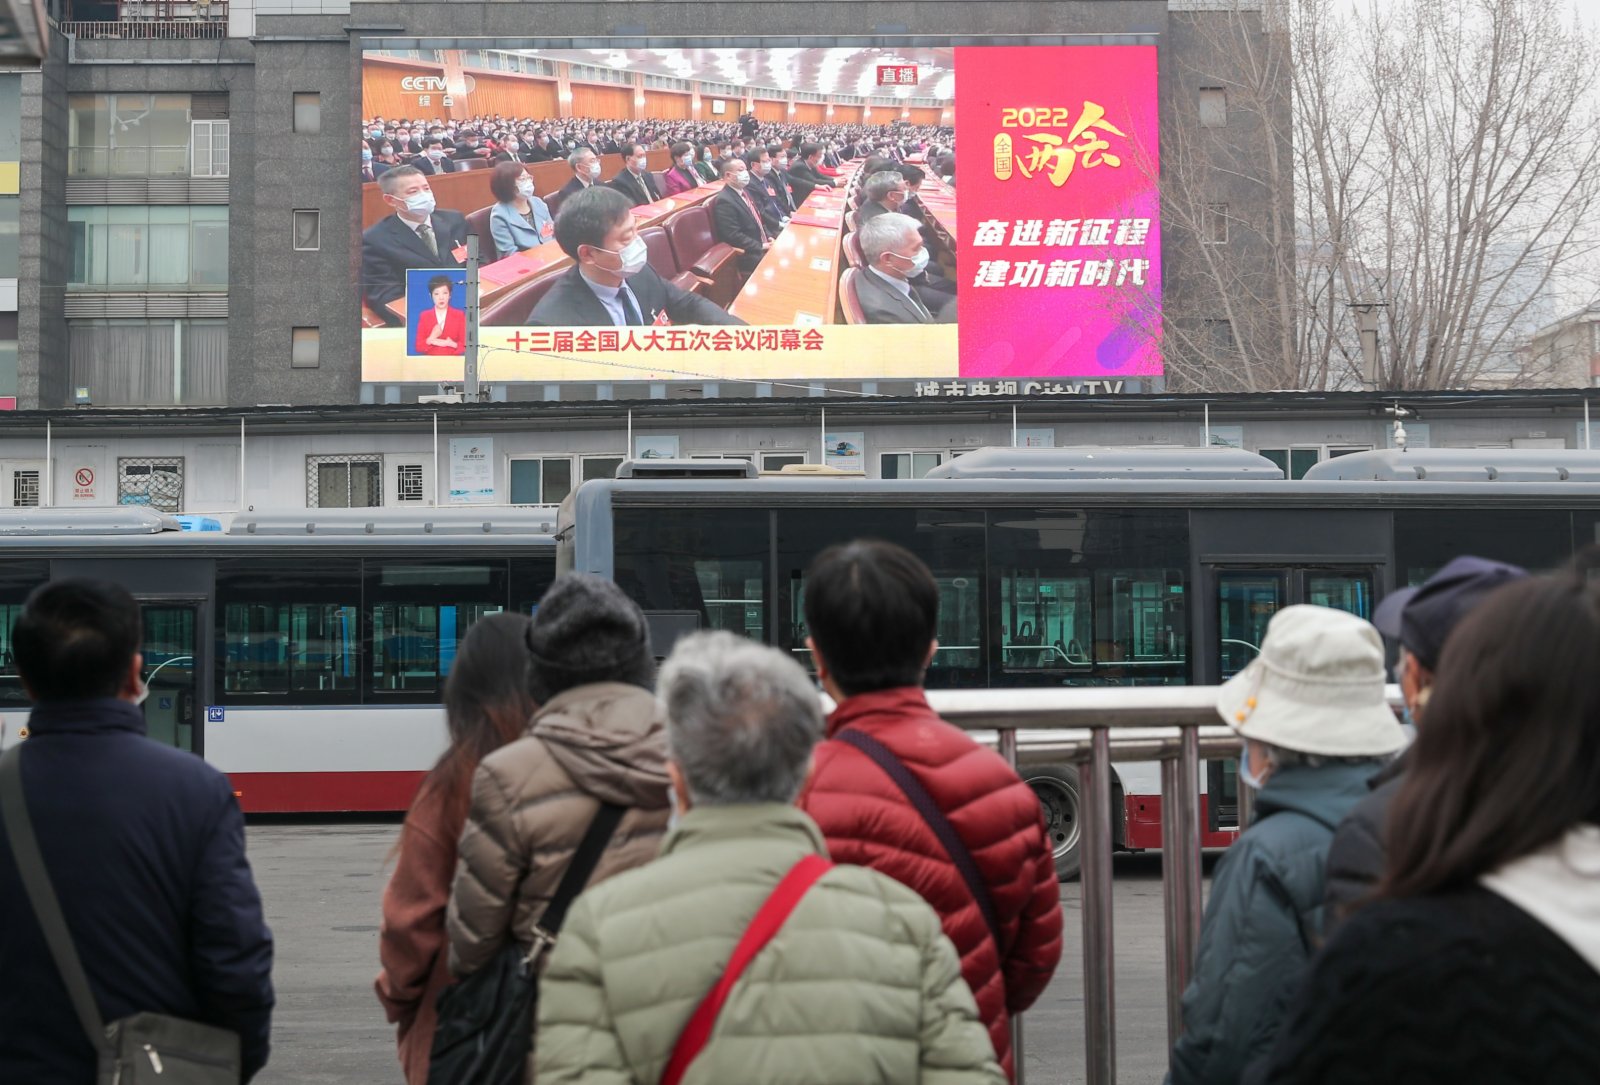 圖為北京市民通過戶外大屏觀看閉幕會畫面。 中新社